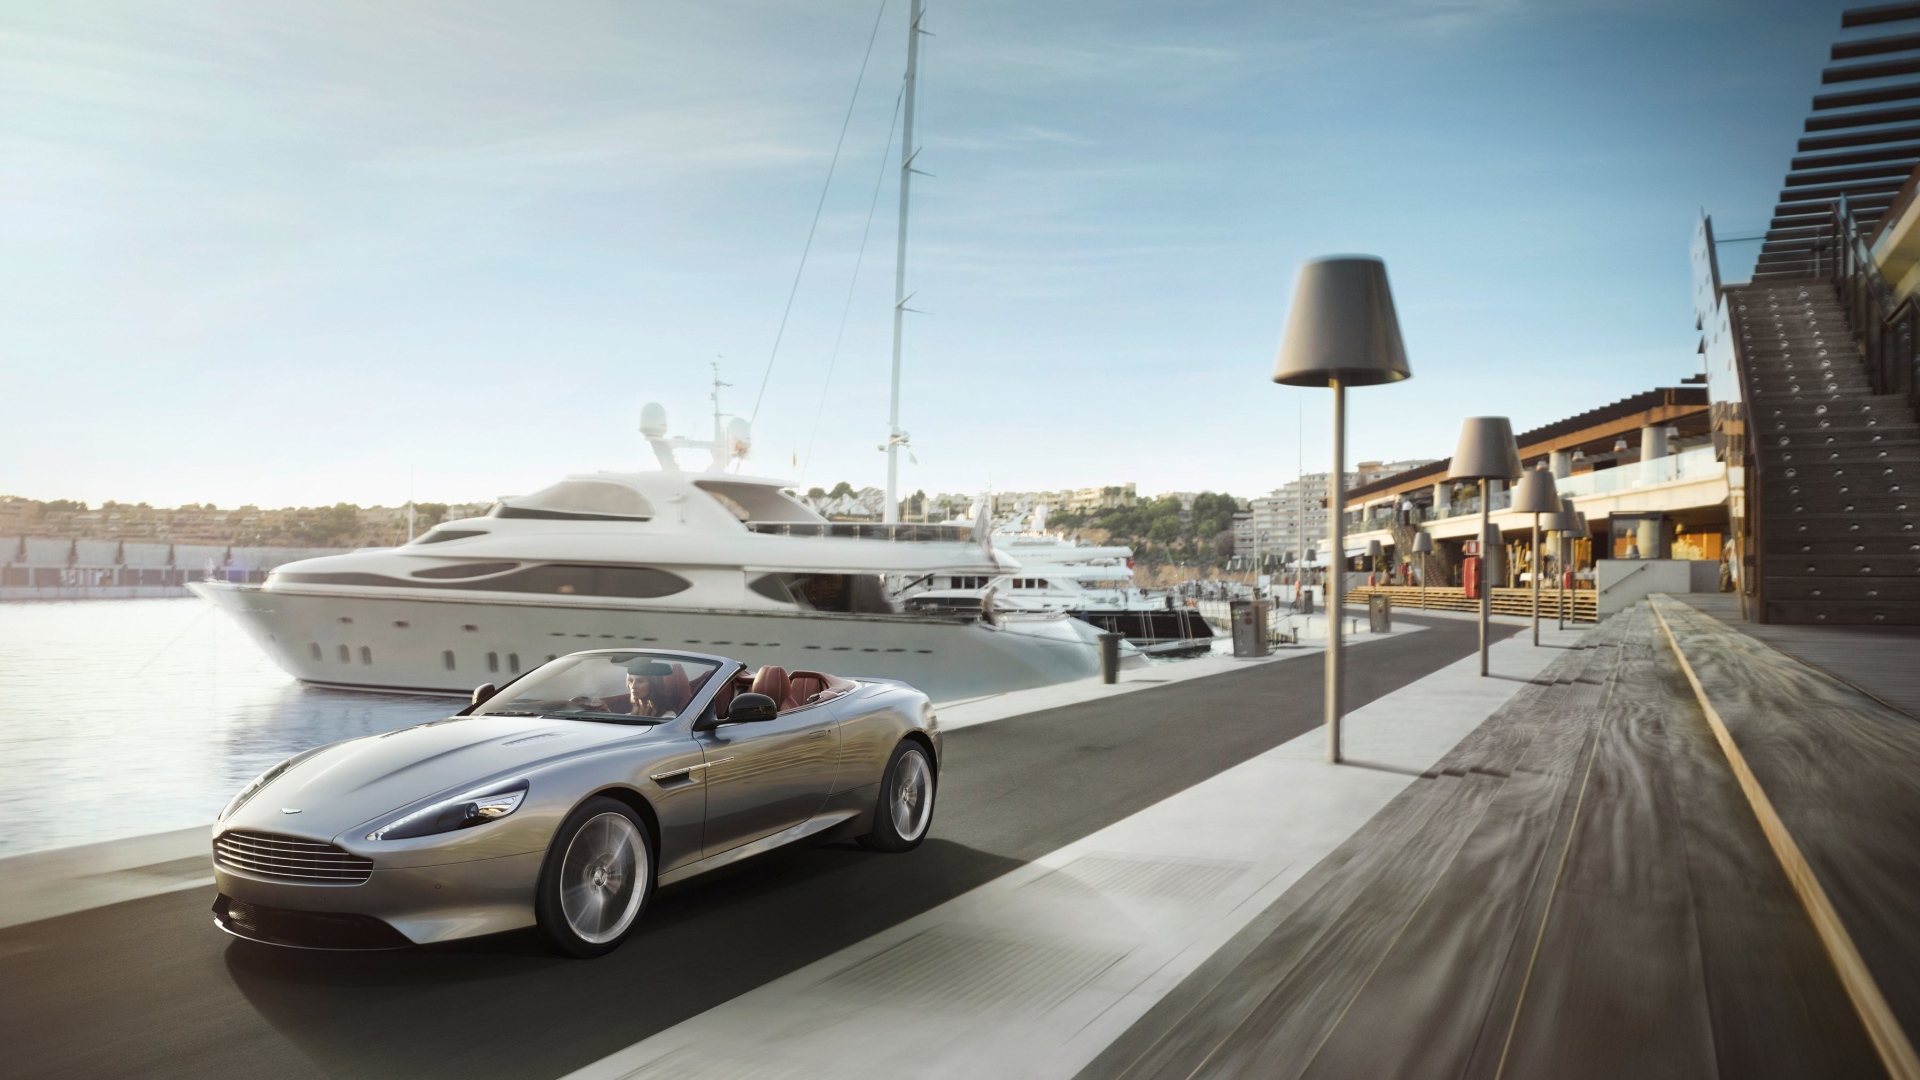 Кабриолет Aston Martin на фоне яхты